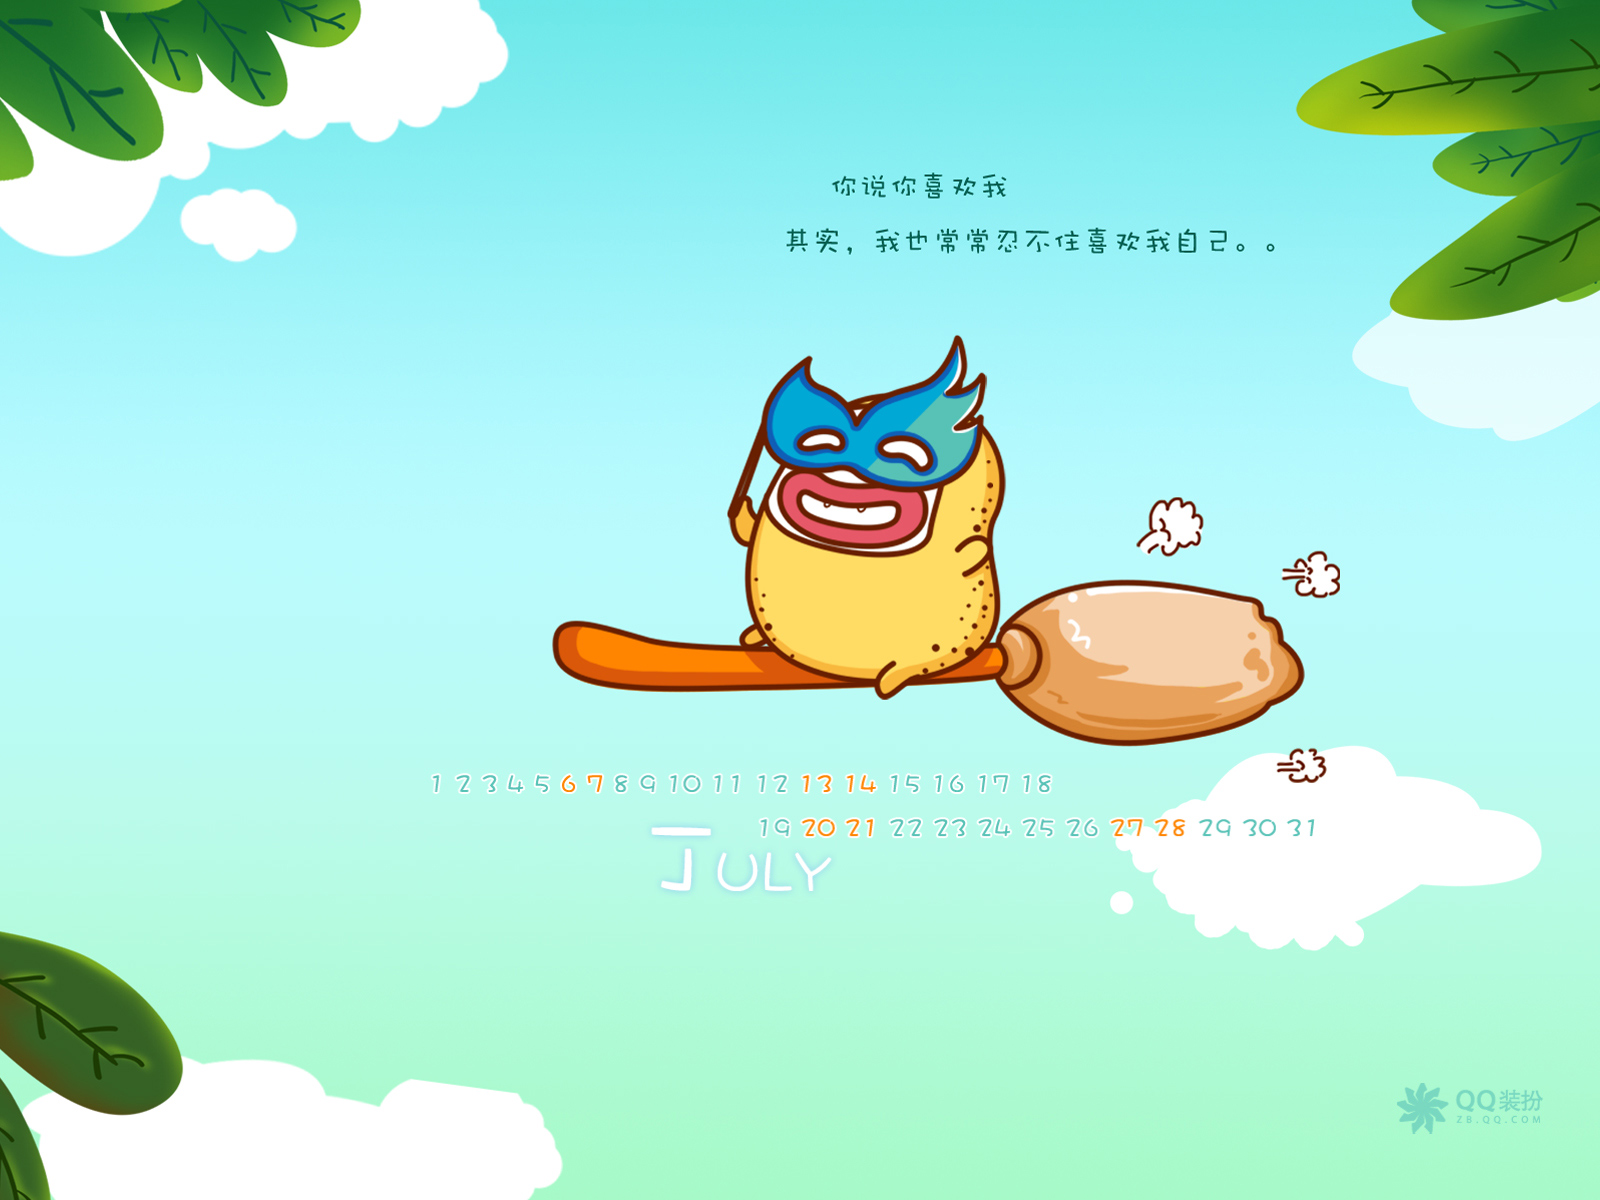 2013年7月(七月)月历壁纸 腾讯篇 (宽屏+普屏)(壁纸24)